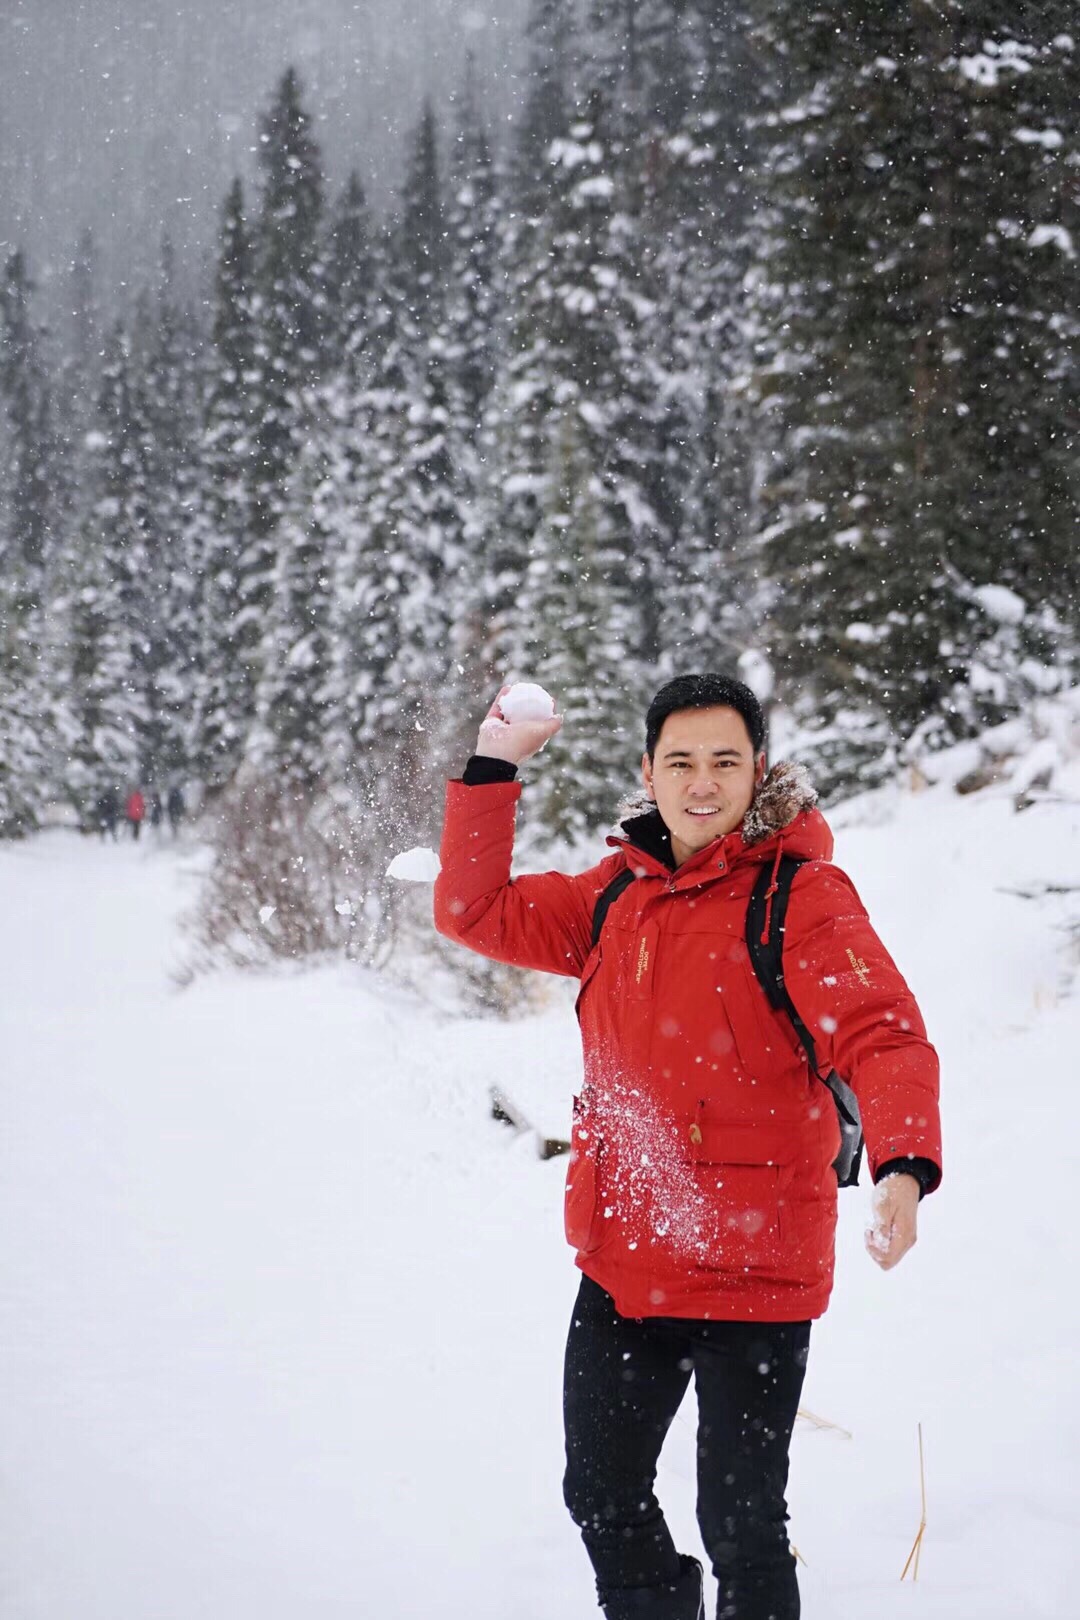 【加拿大最美雪景】从加拿大回北京有一阵子了，北京又下了一场“转瞬即逝”的雪...于是越发怀念在加拿大